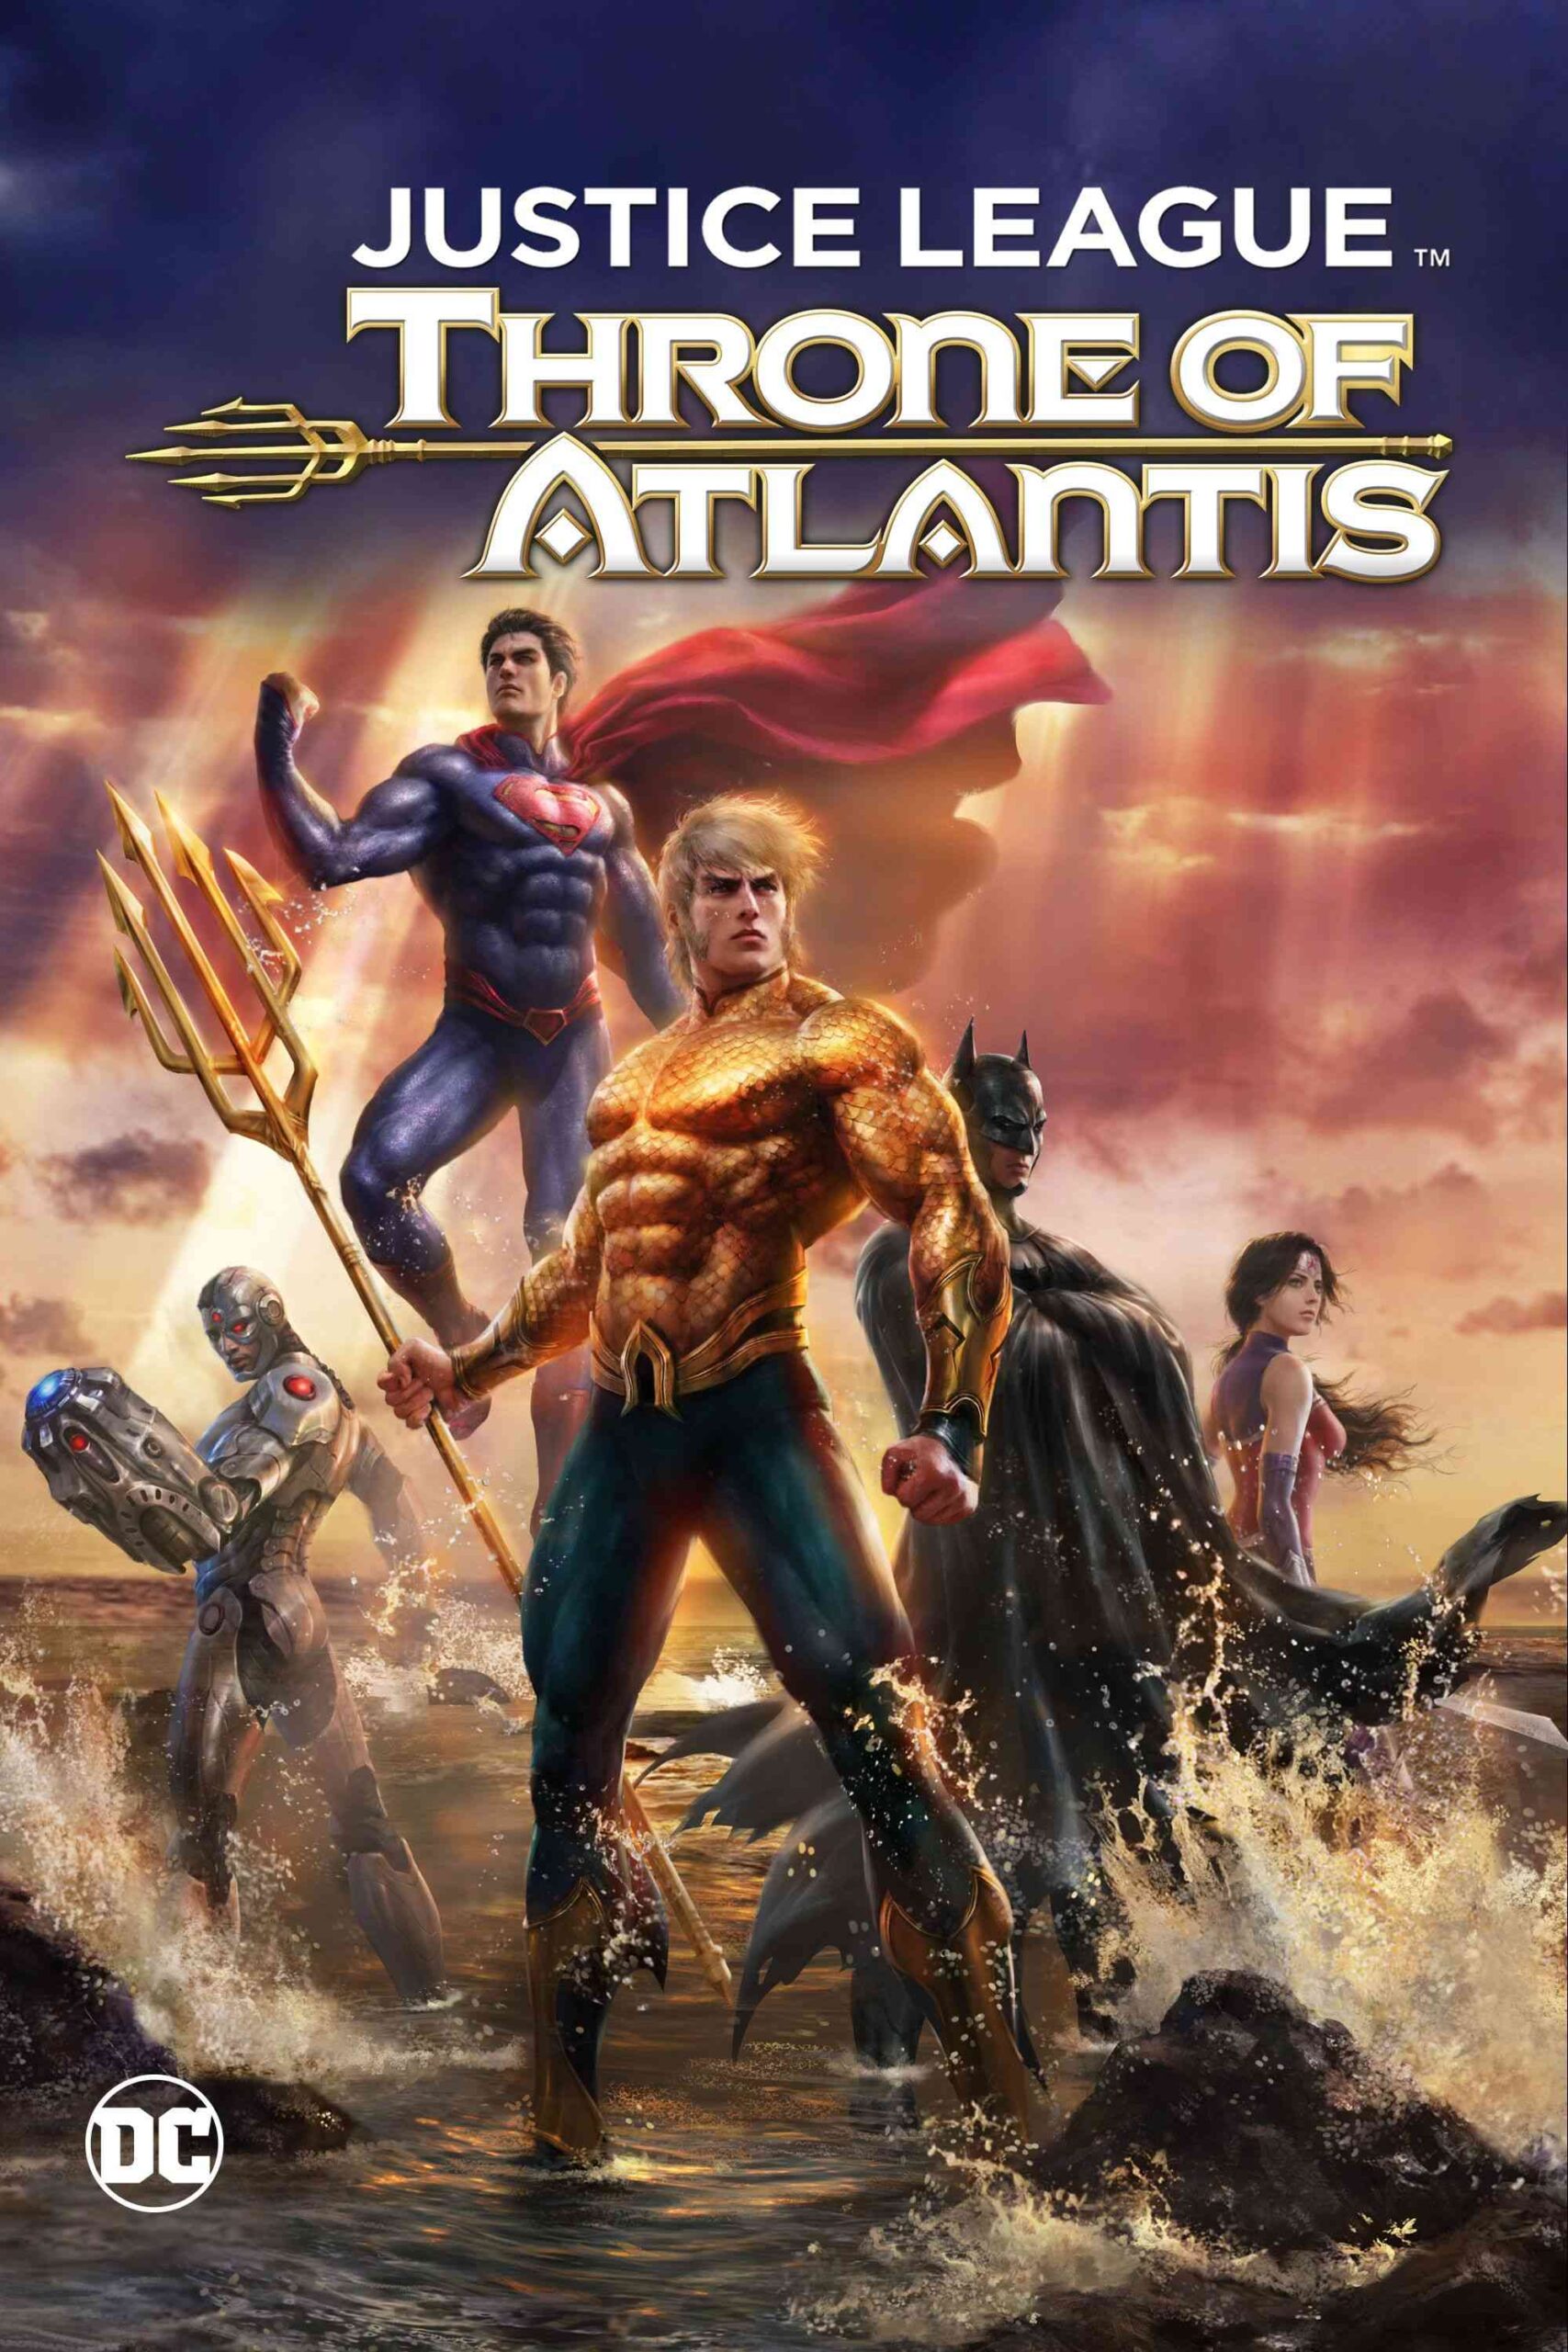 FULL MOVIE: Justice League: Throne of Atlantis (2015)